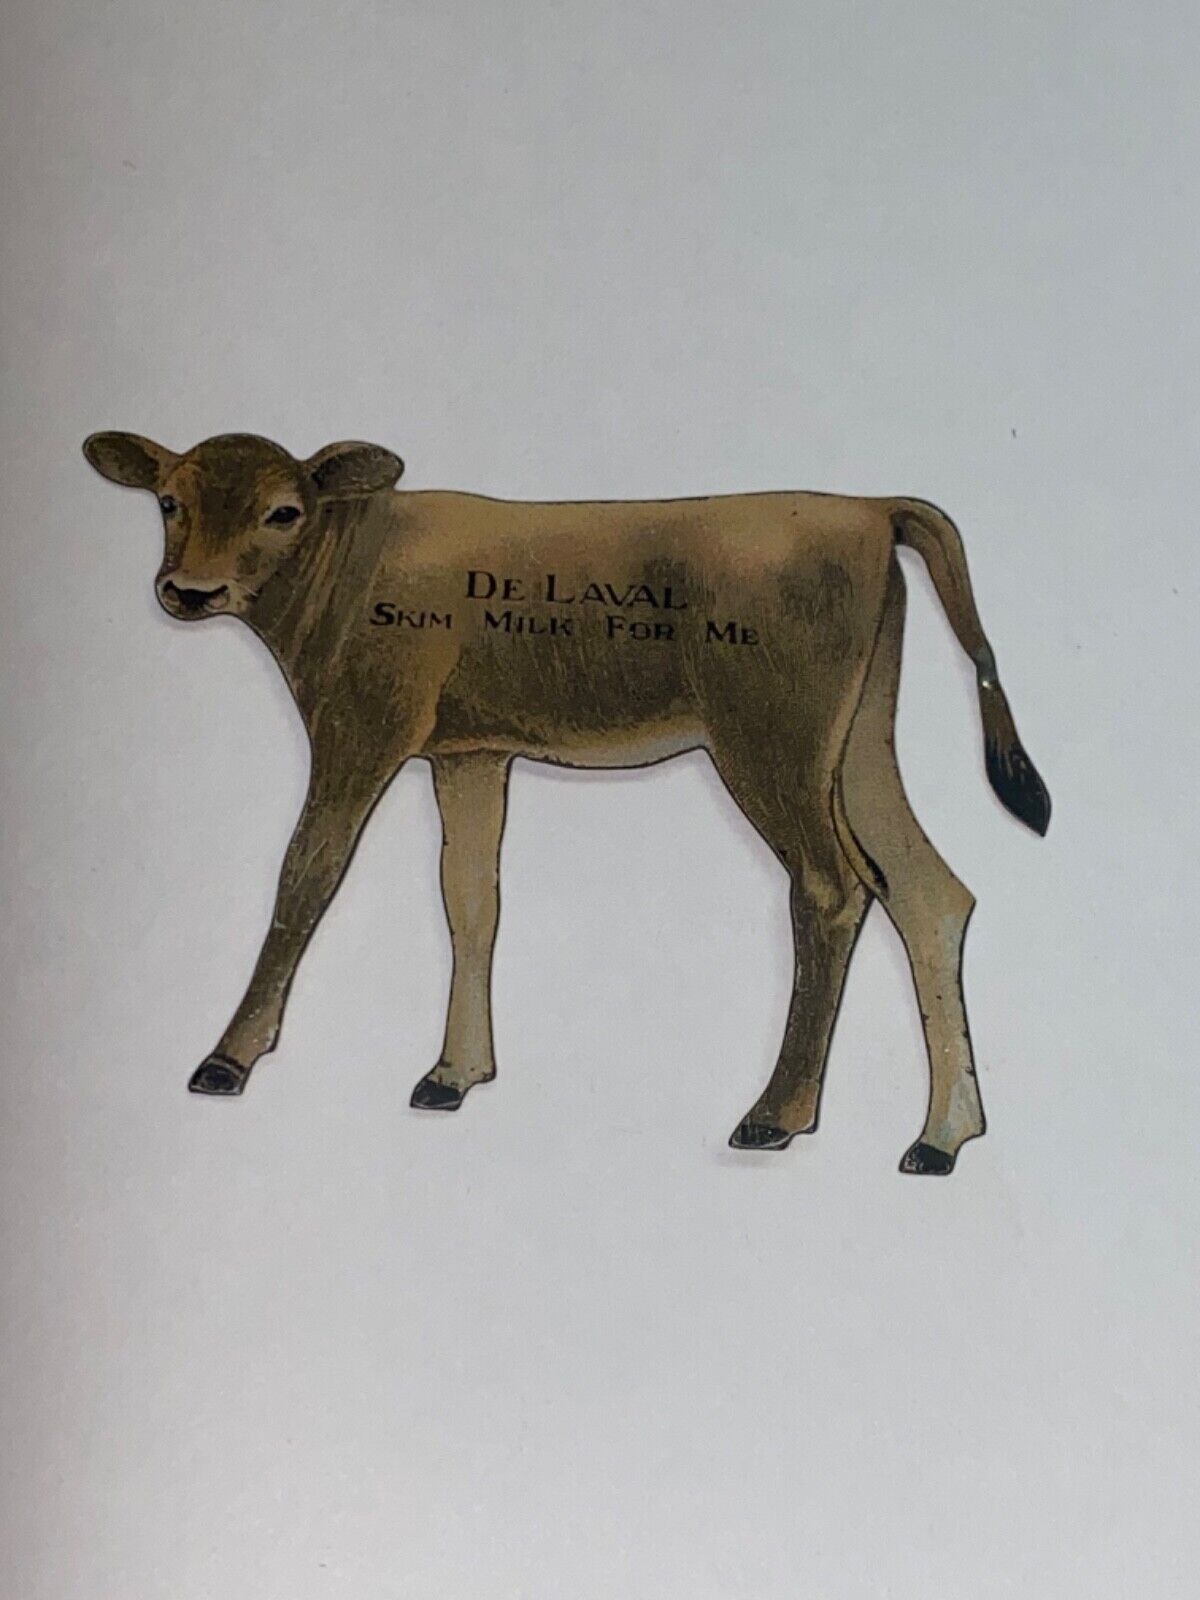 De Laval Cream Separators Die Milkmaid Cow  Metal Trade Card